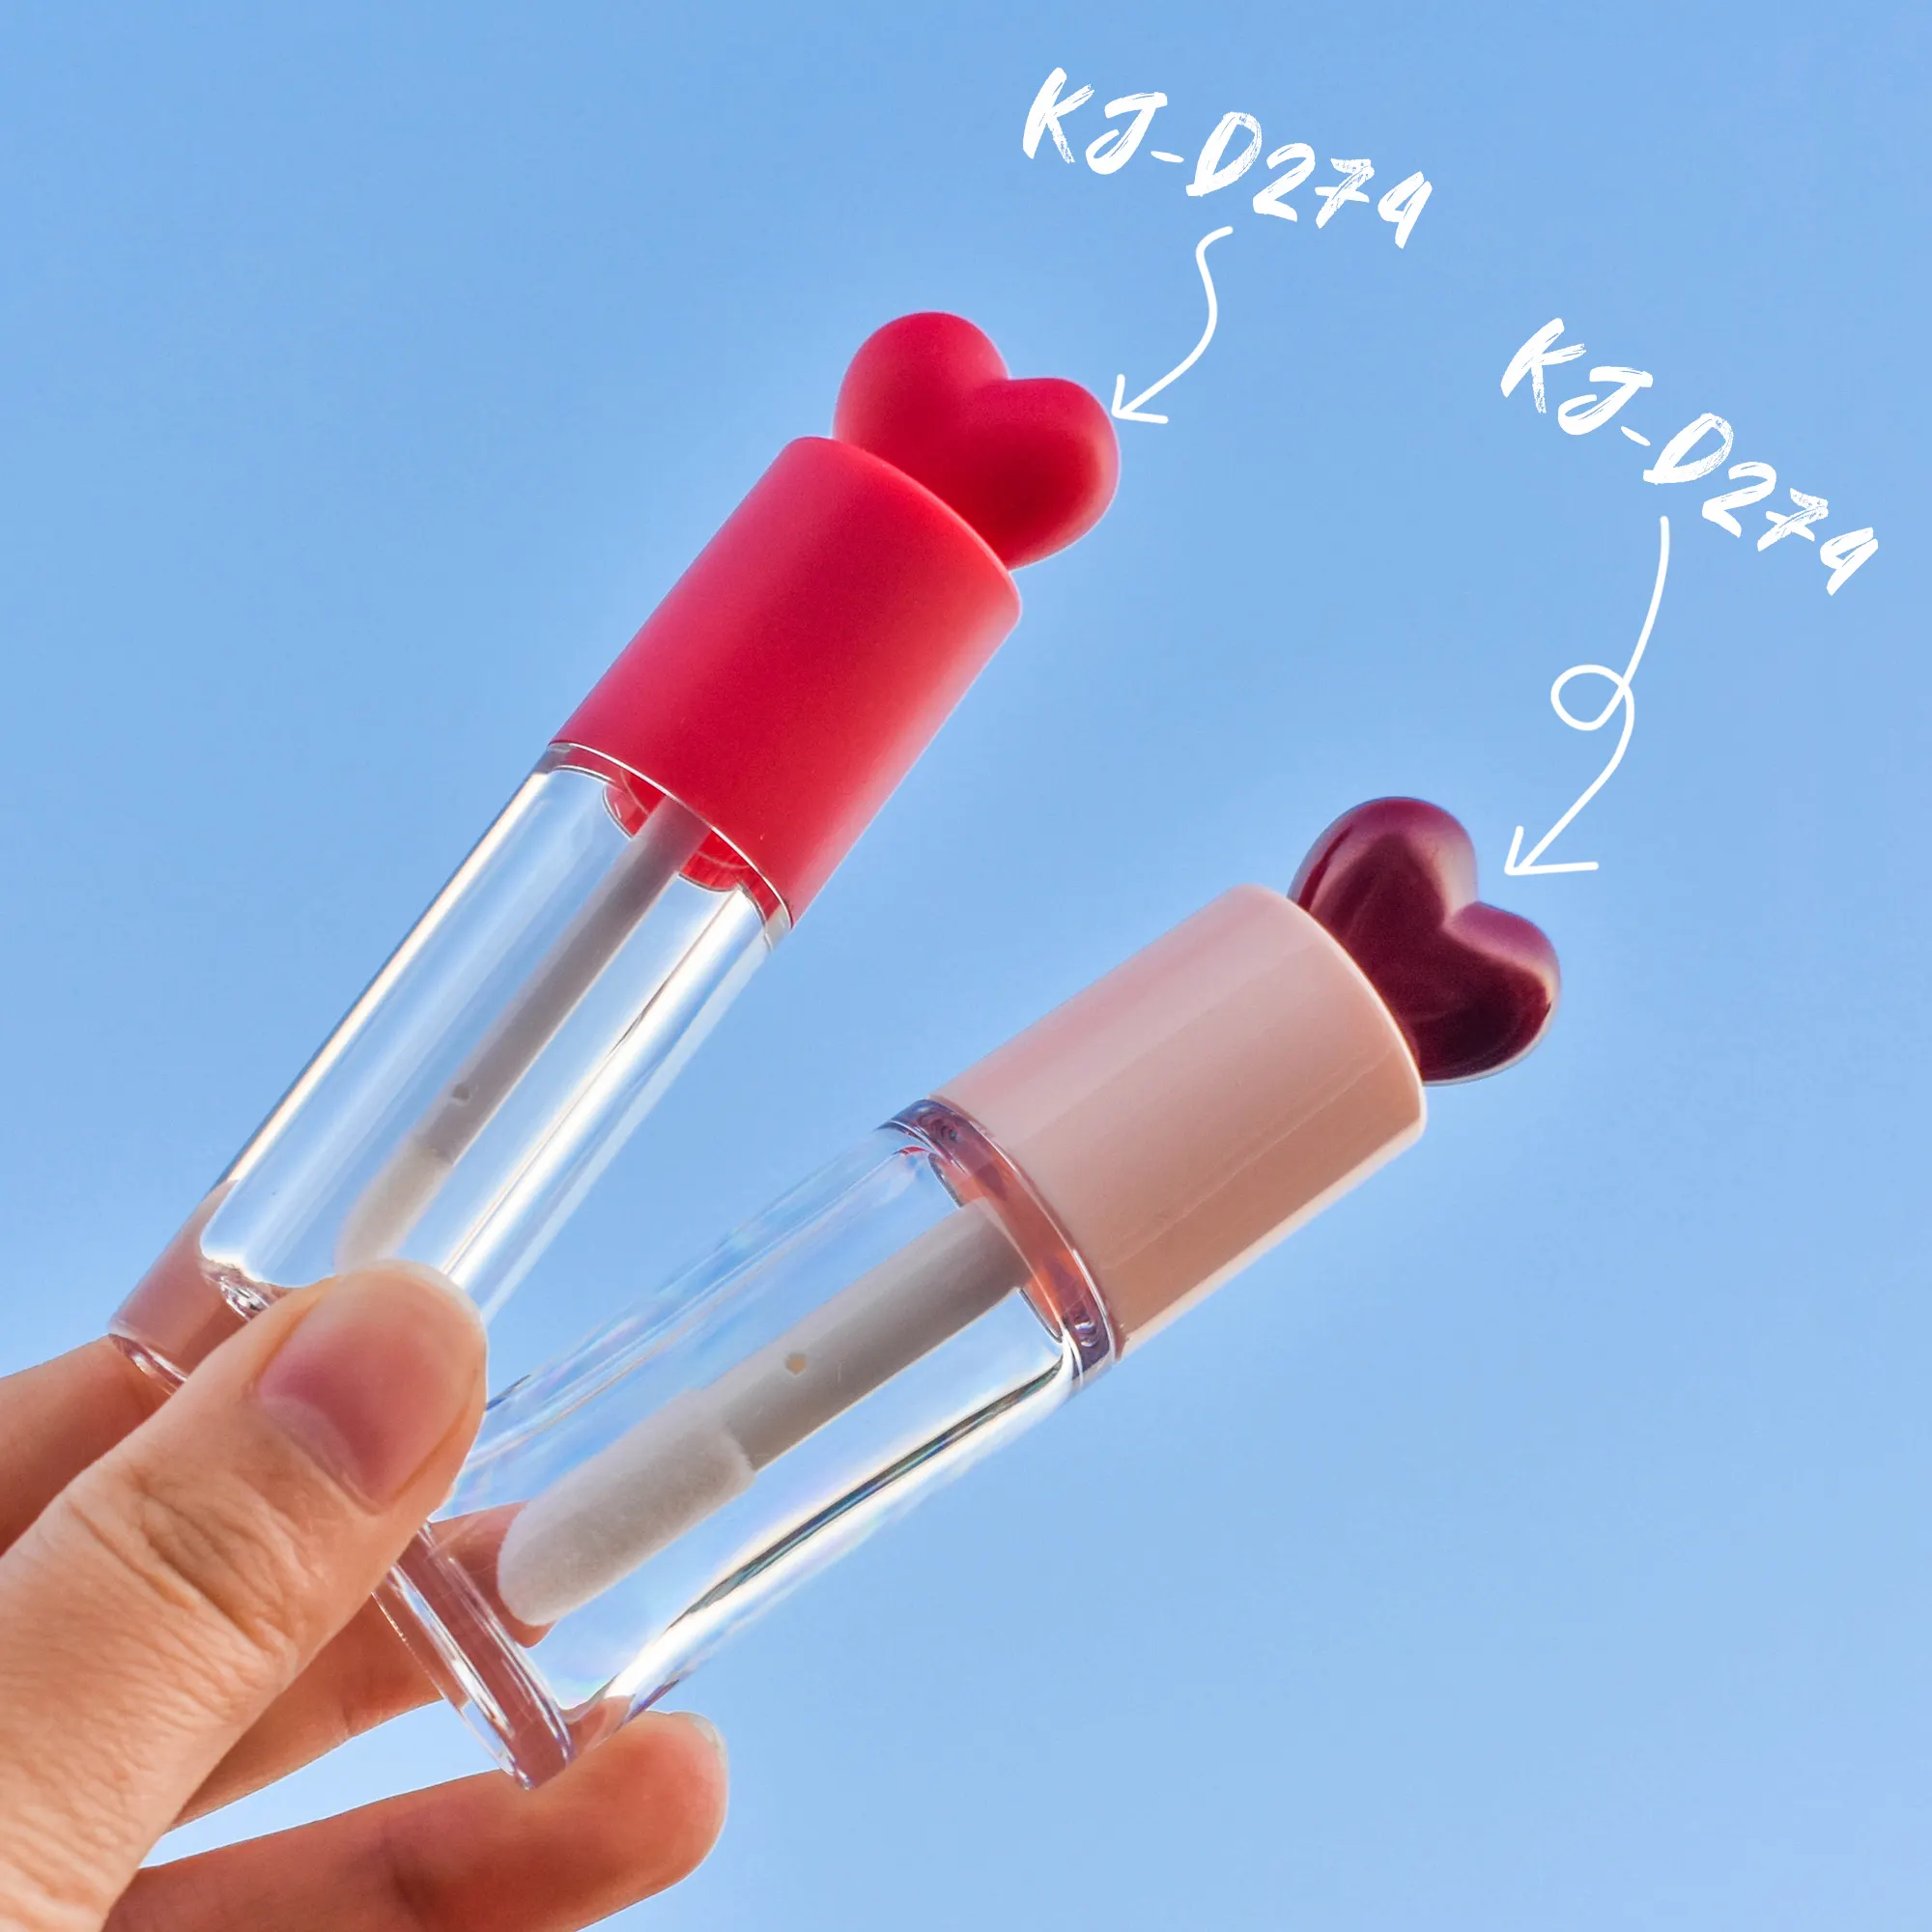 Tubo de embalaje de brillo de labios redondo de lujo de 5ml, embalaje cosmético rojo y rosa, lindo tubo de brillo de labios vacío con cepillo de varitas en forma de corazón